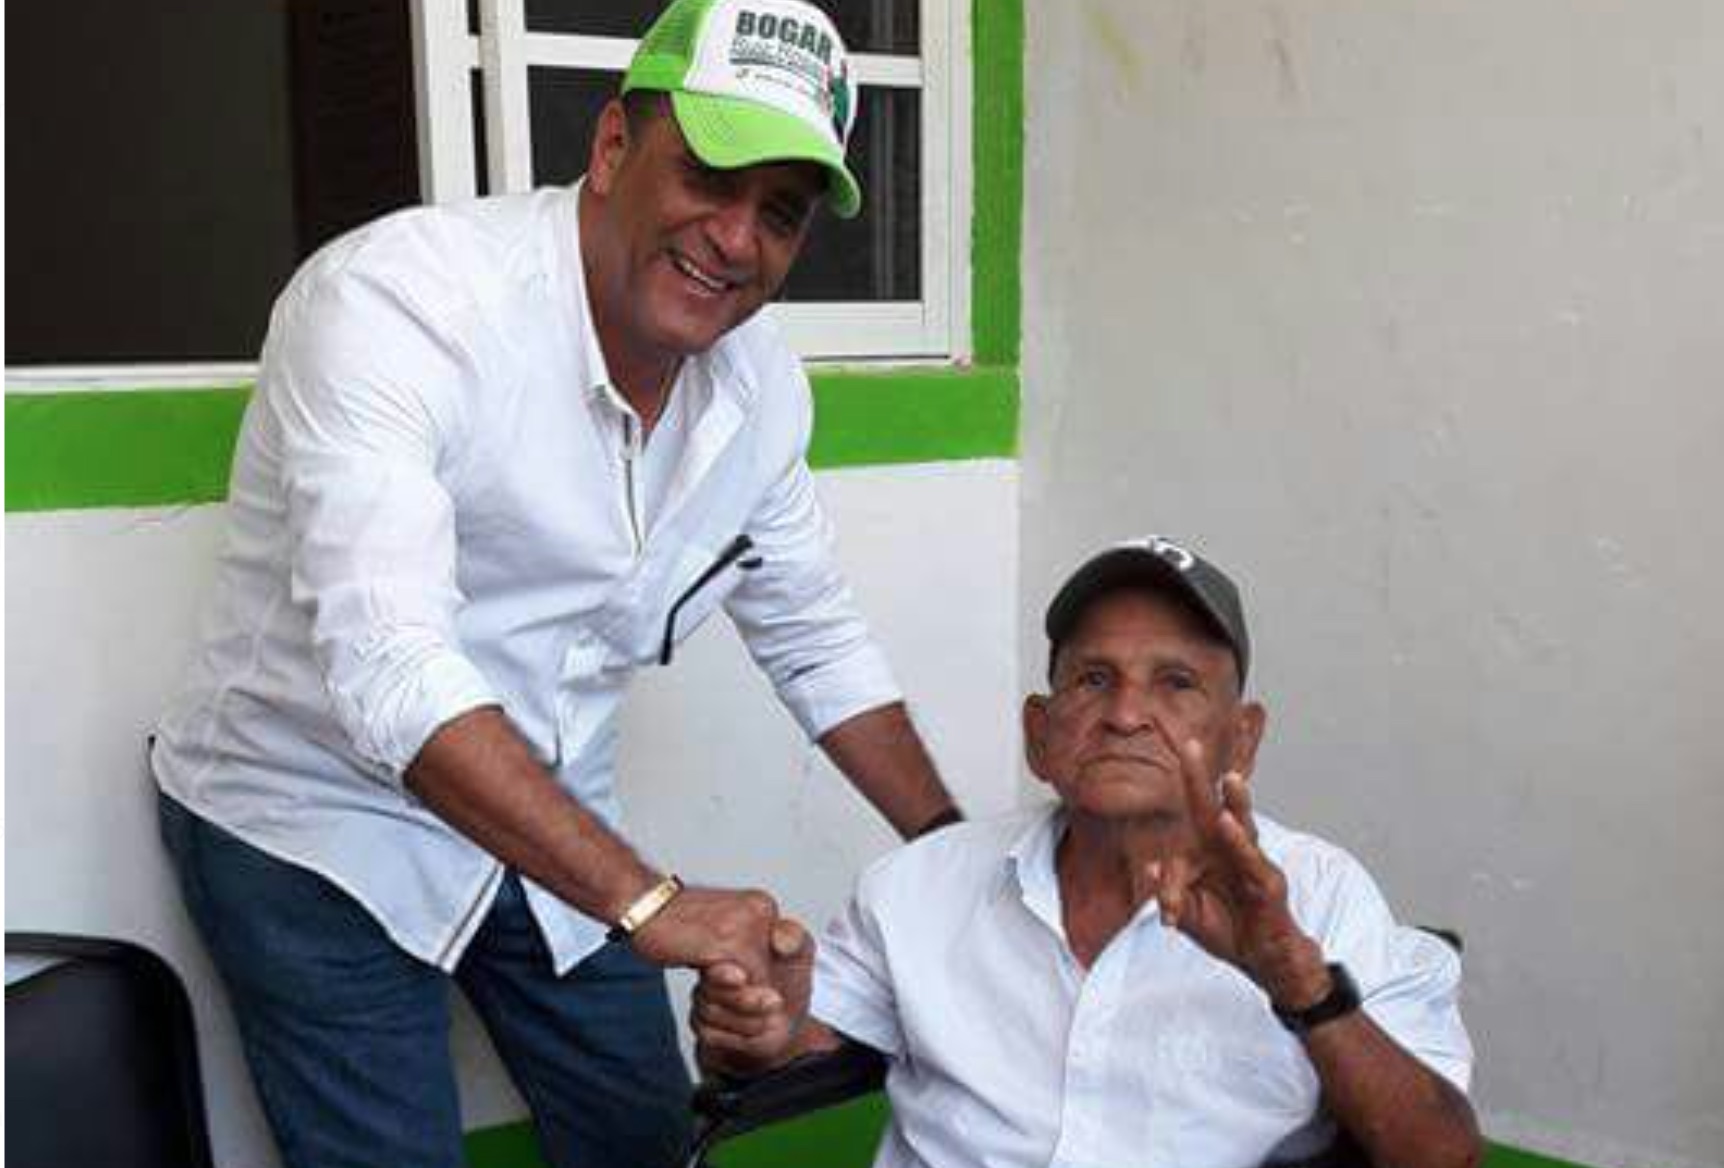 Bogar Ruiz, candidato del PVEM a la alcaldía de Alvarado, continúa recorriendo congregaciones